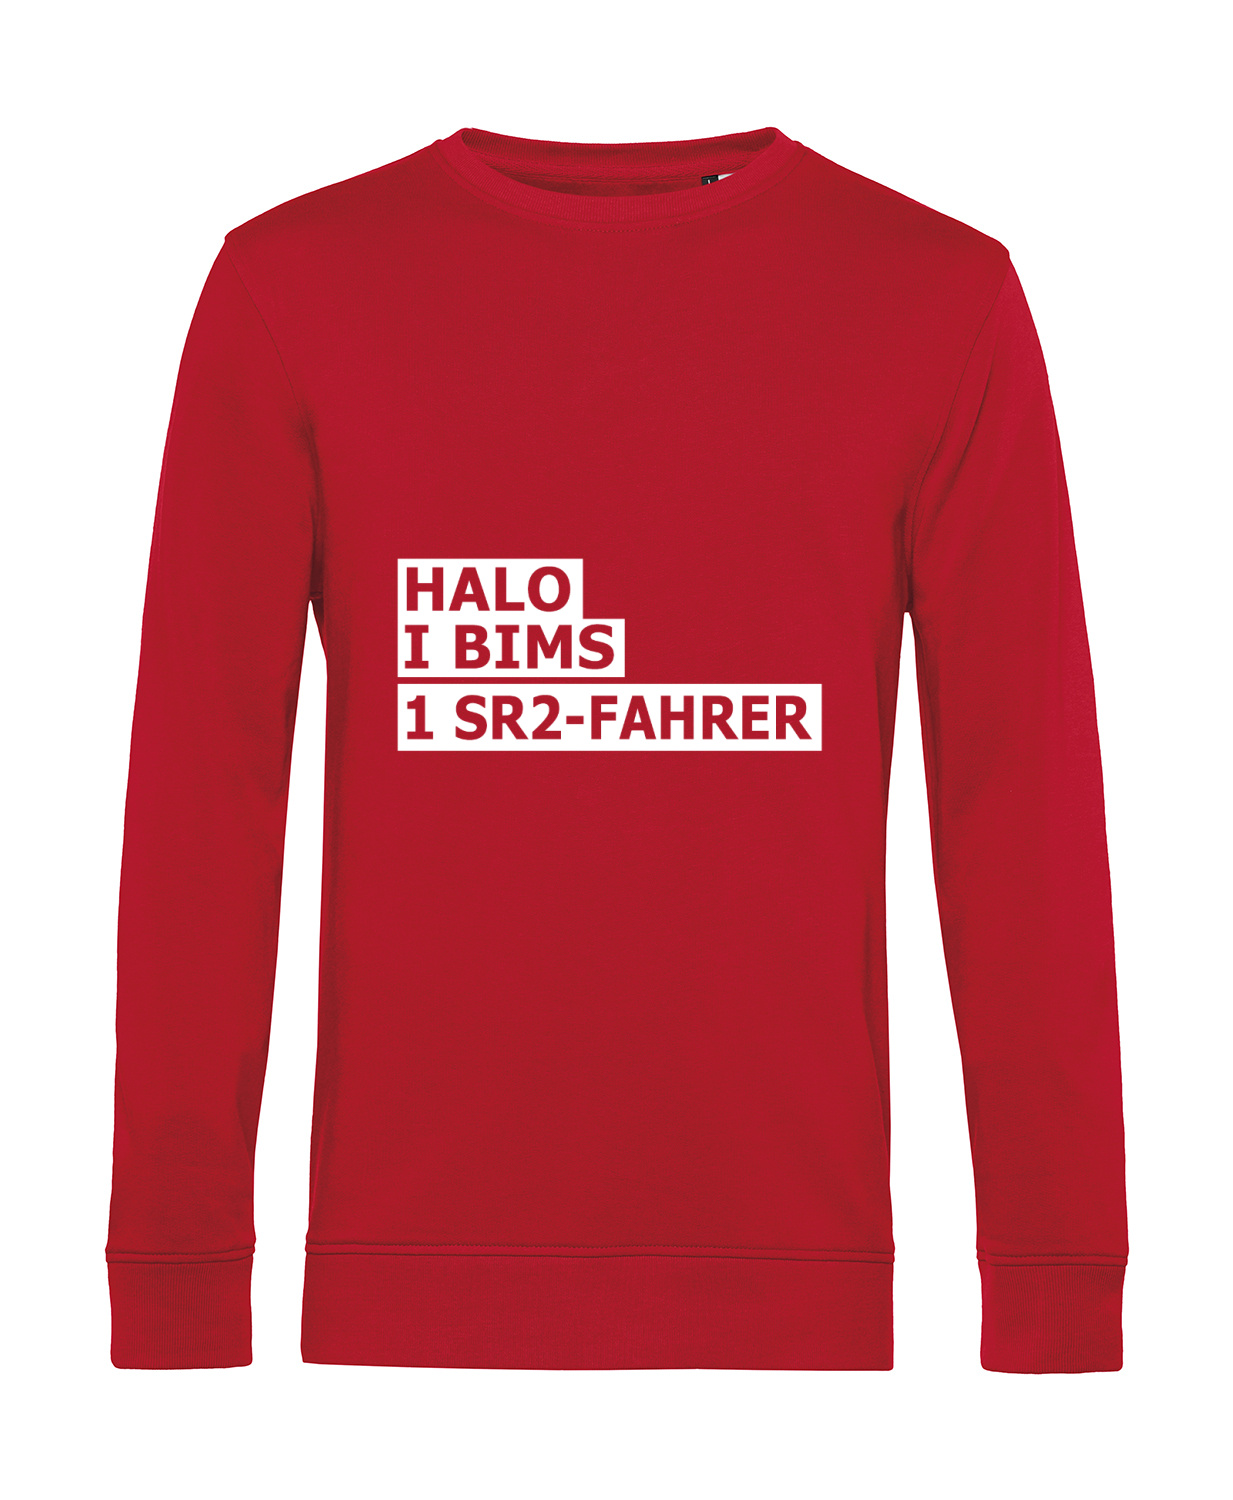 Nachhaltiges Sweatshirt Herren 2Takter - Halo I bims 1 SR2-Fahrer